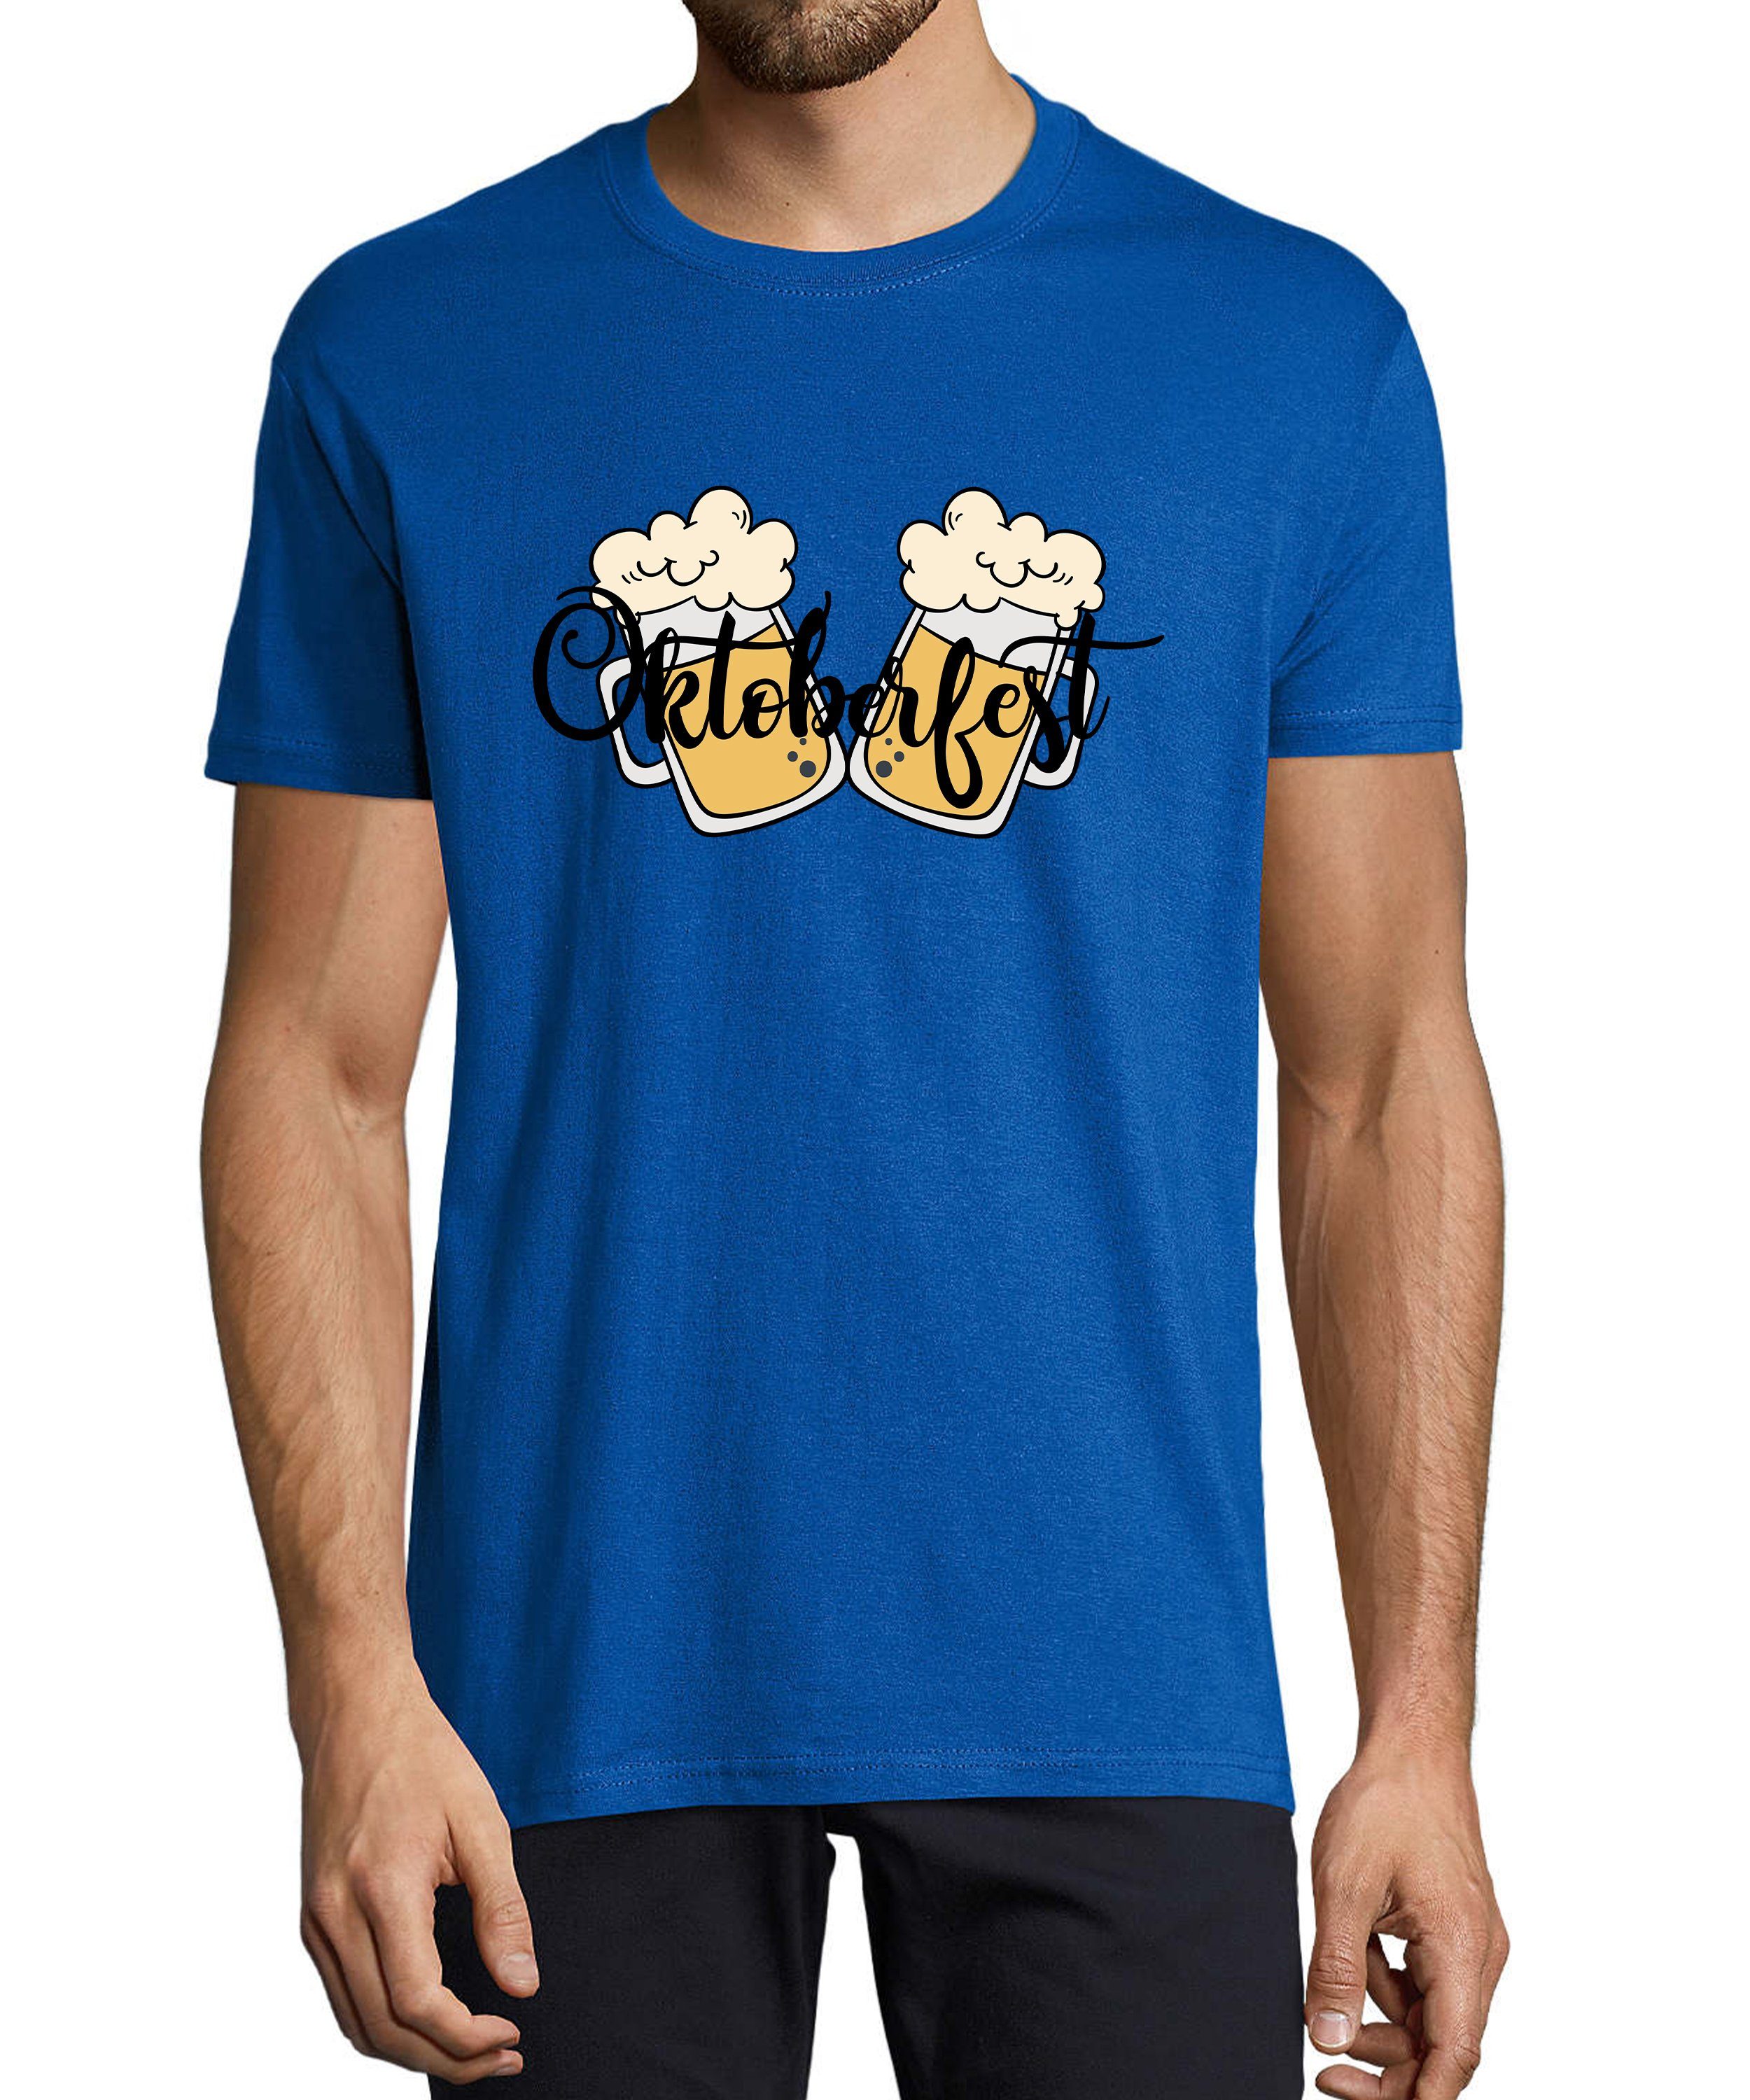 MyDesign24 T-Shirt Herren Party Shirt - Trinkshirt Oktoberfest T-Shirt 2 Biergläser Baumwollshirt mit Aufdruck Regular Fit, i326 royal blau | Trachtenshirts